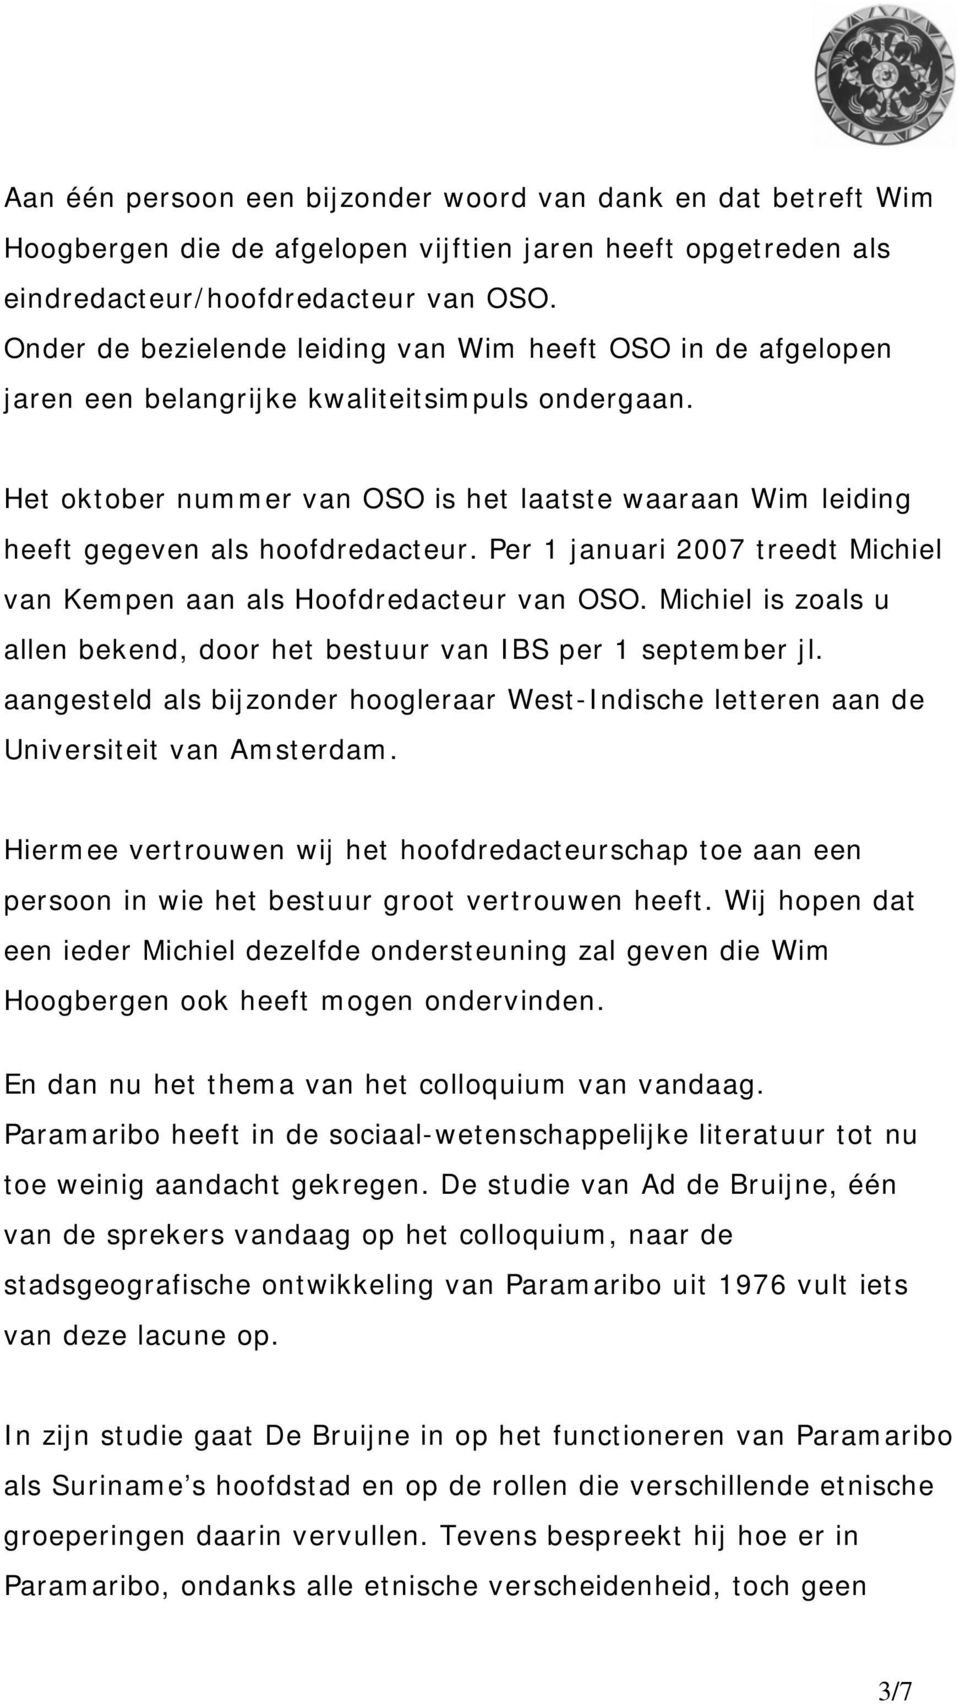 Het oktober nummer van OSO is het laatste waaraan Wim leiding heeft gegeven als hoofdredacteur. Per 1 januari 2007 treedt Michiel van Kempen aan als Hoofdredacteur van OSO.